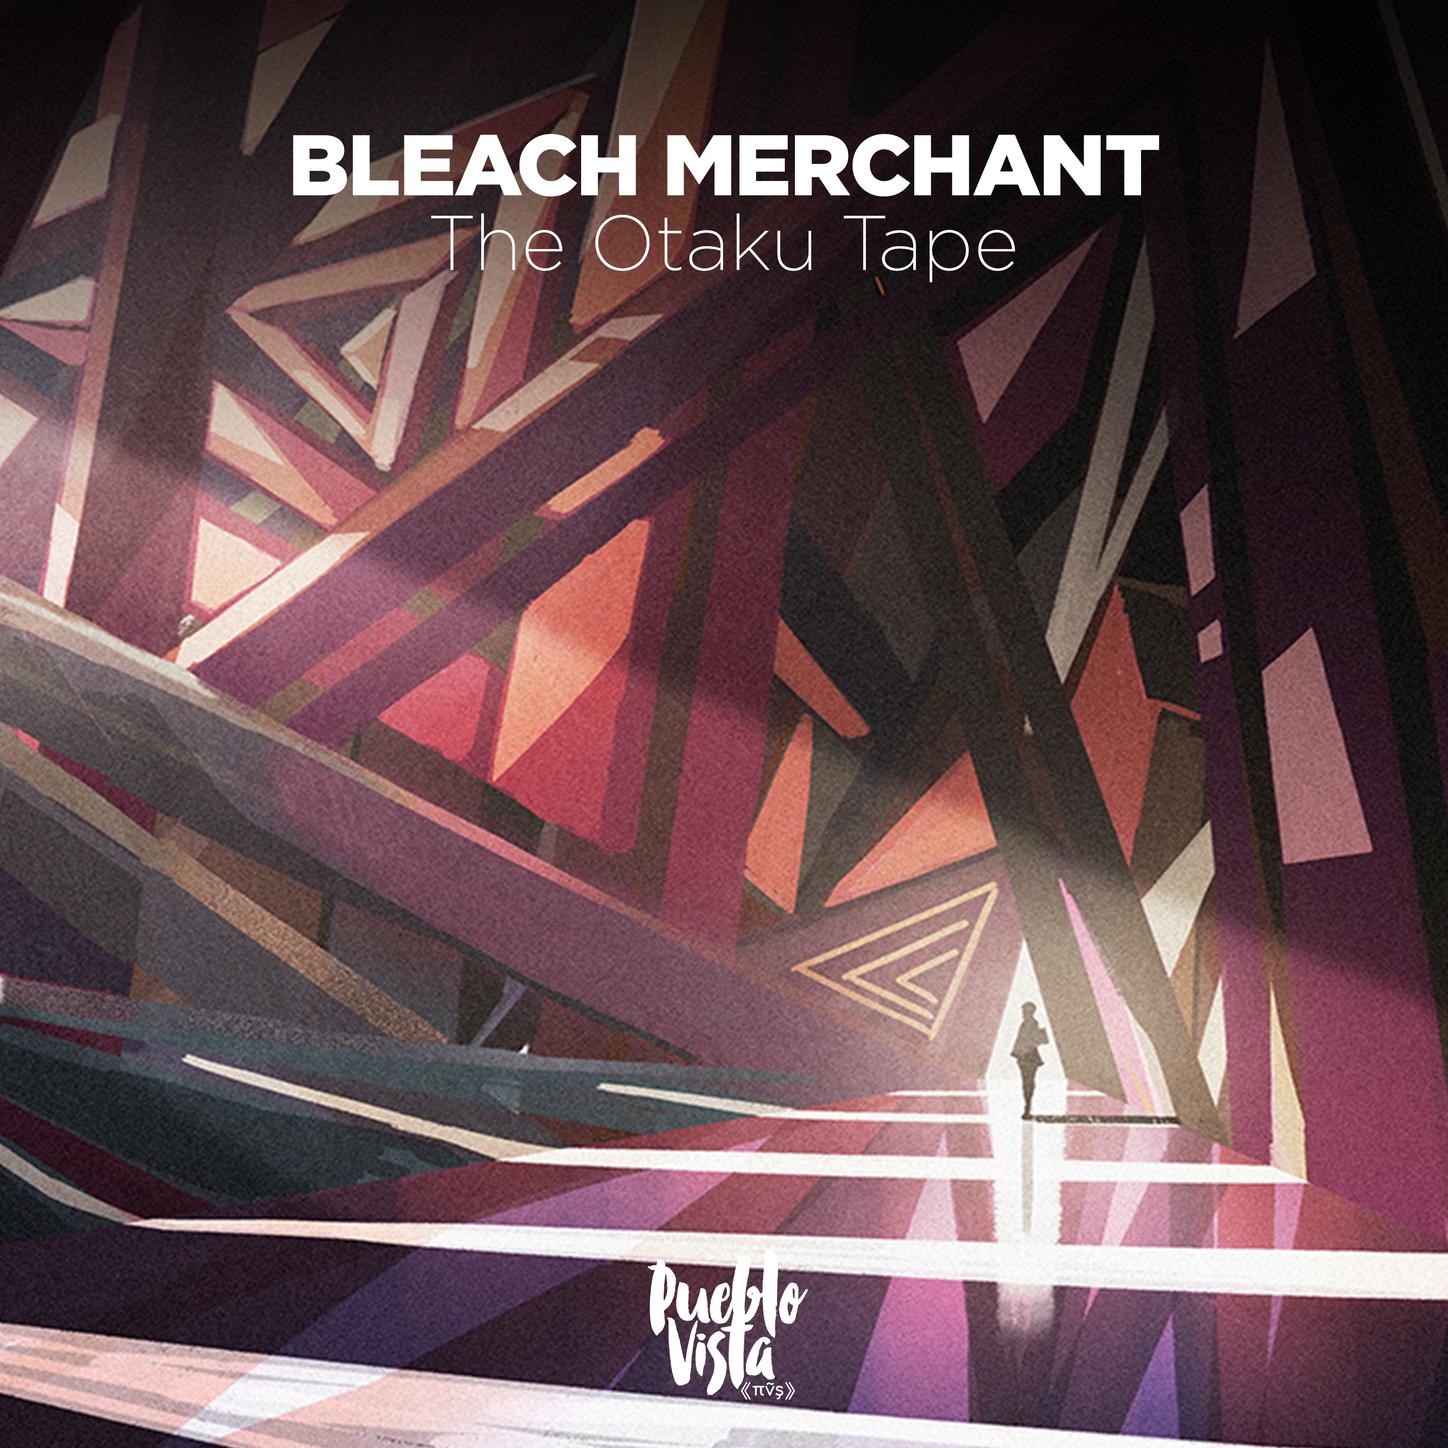 The Otaku Tape